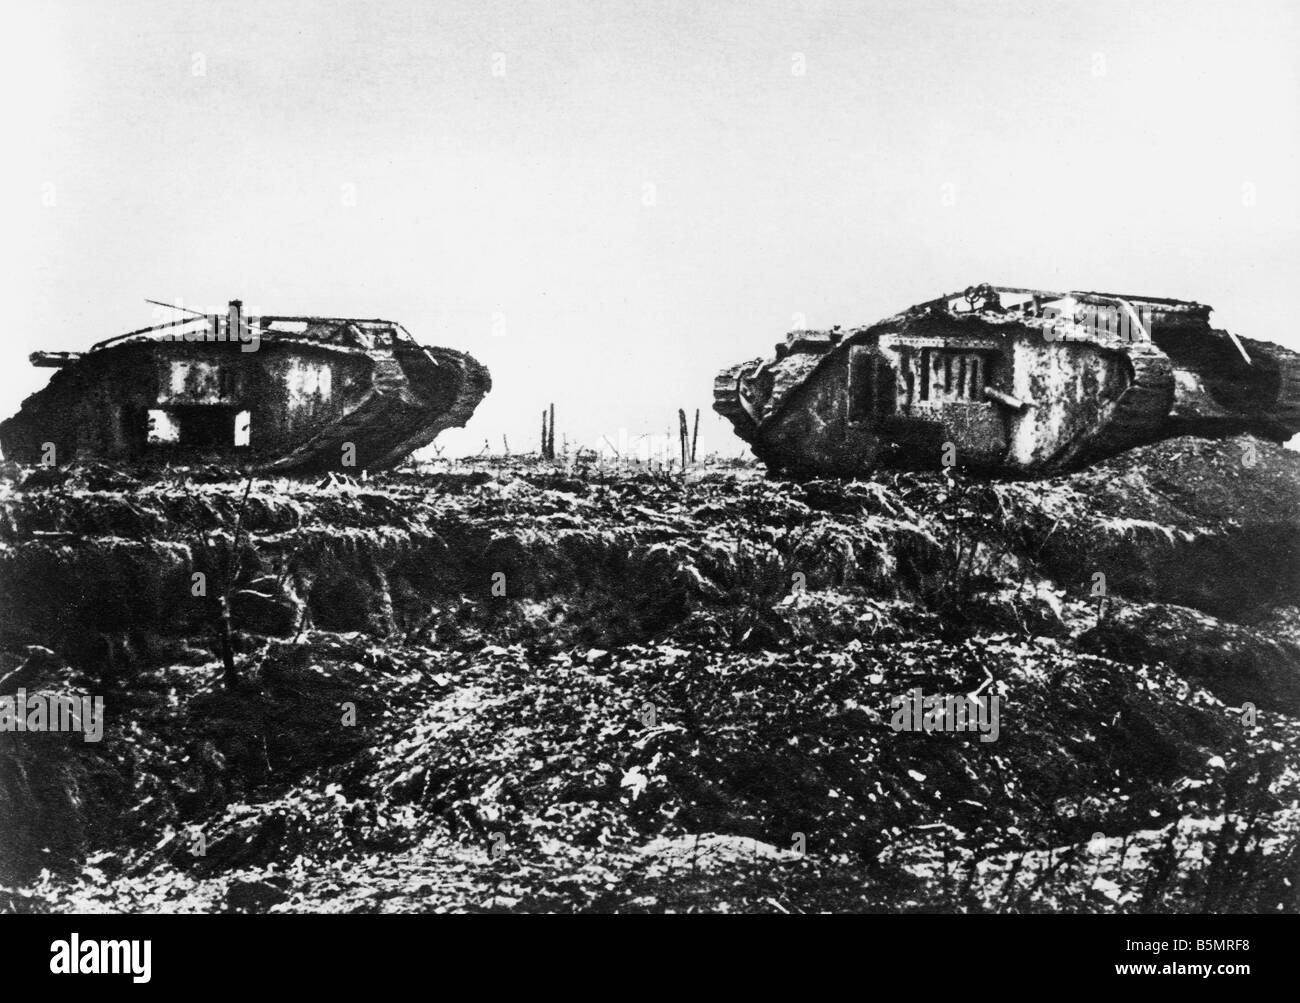 9-1917-11-20 A2 E Panzerschlacht in der Nähe von Cambrai Engl Tanks Weltkrieg einer 1914-18 Western Front Panzerschlacht in der Nähe von Cambrai 20 29 Novem b Stockfoto